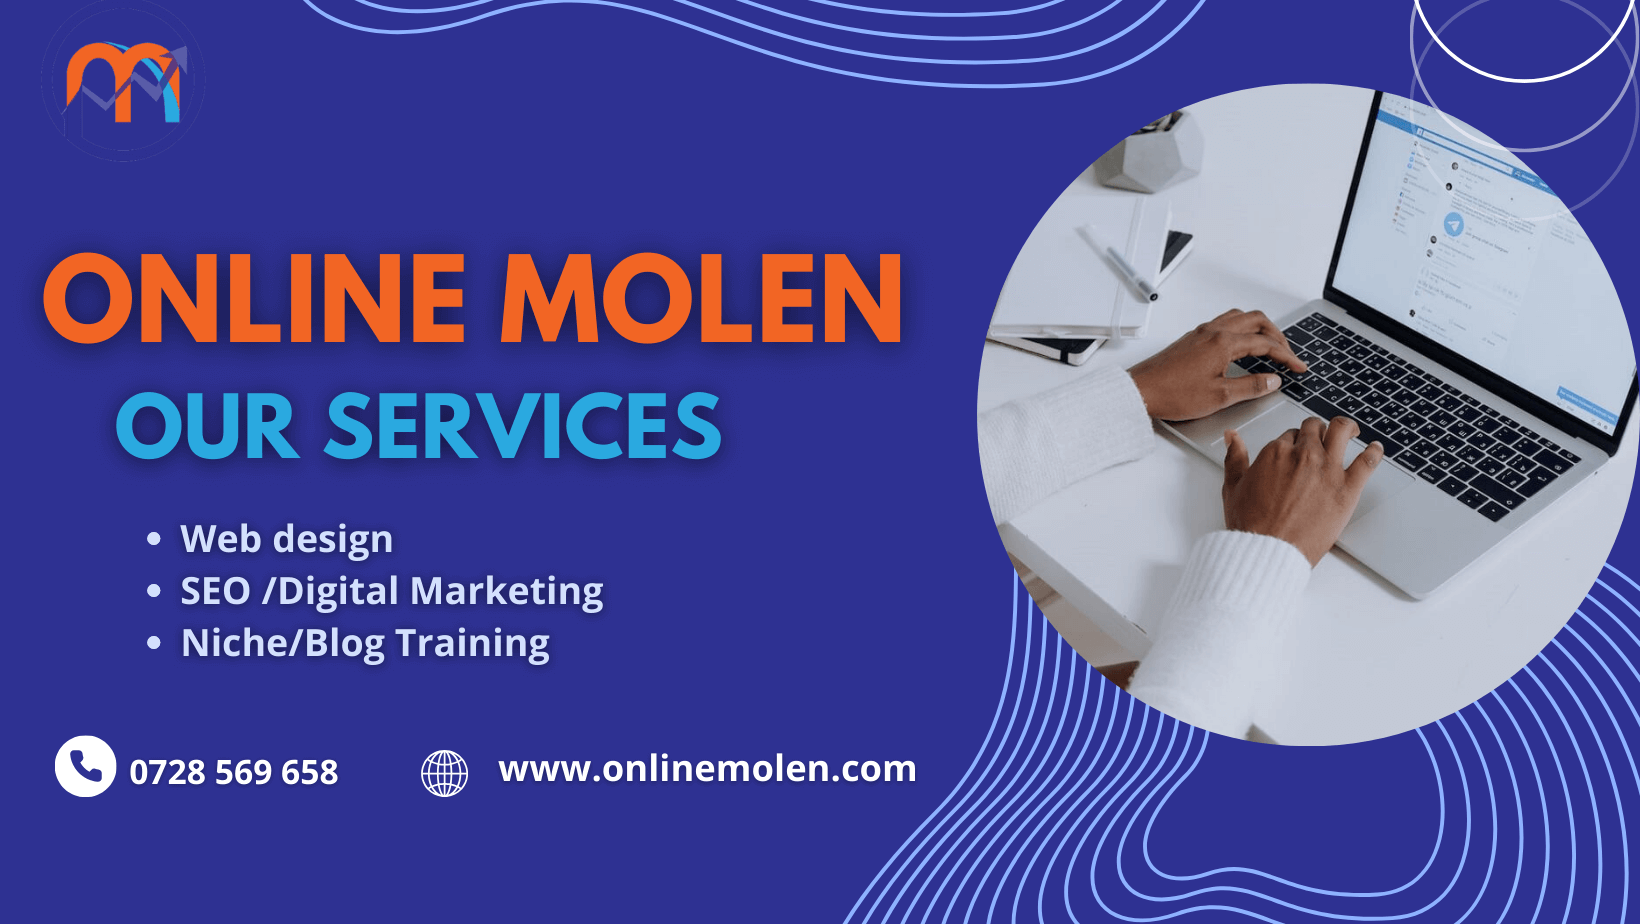 Online Molen business services in Kenya